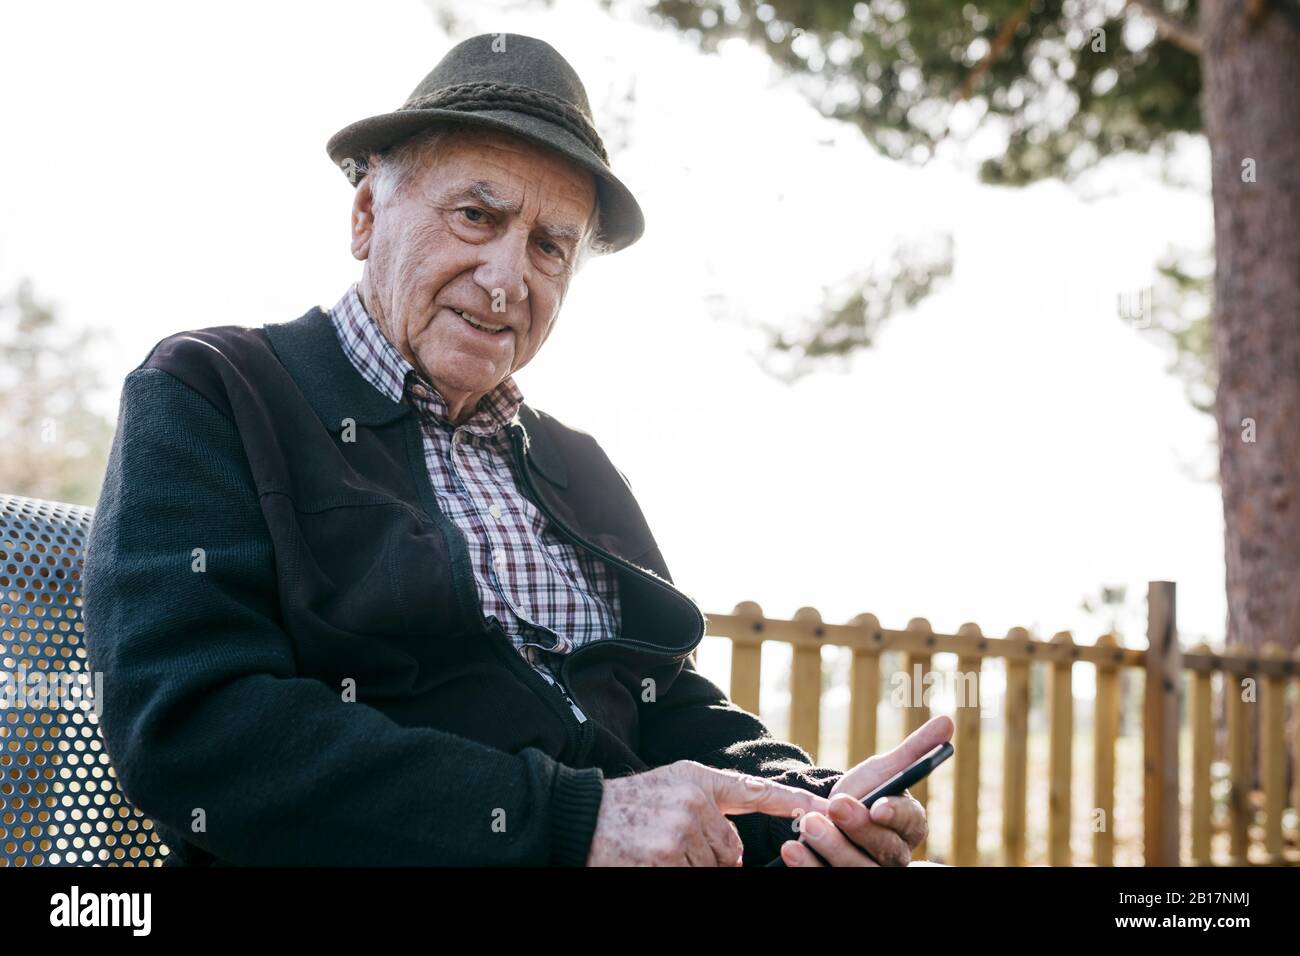 Alter Mann mit, auf Bank sitzend, Smartphone verwendend Stockfoto